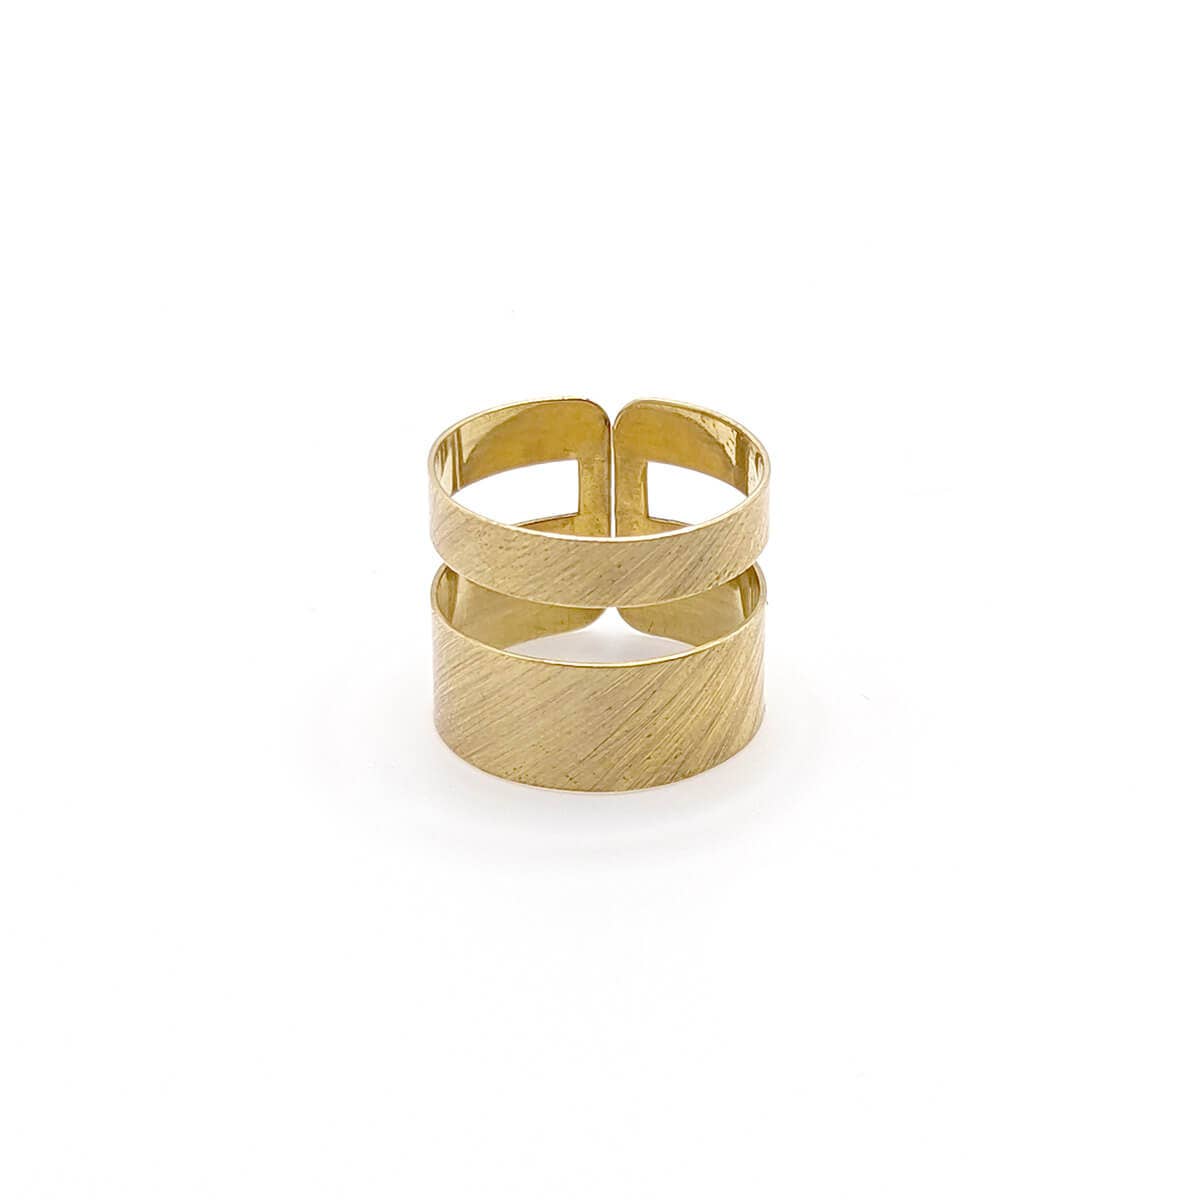 PURPOSE Jewelry - Honor Ring